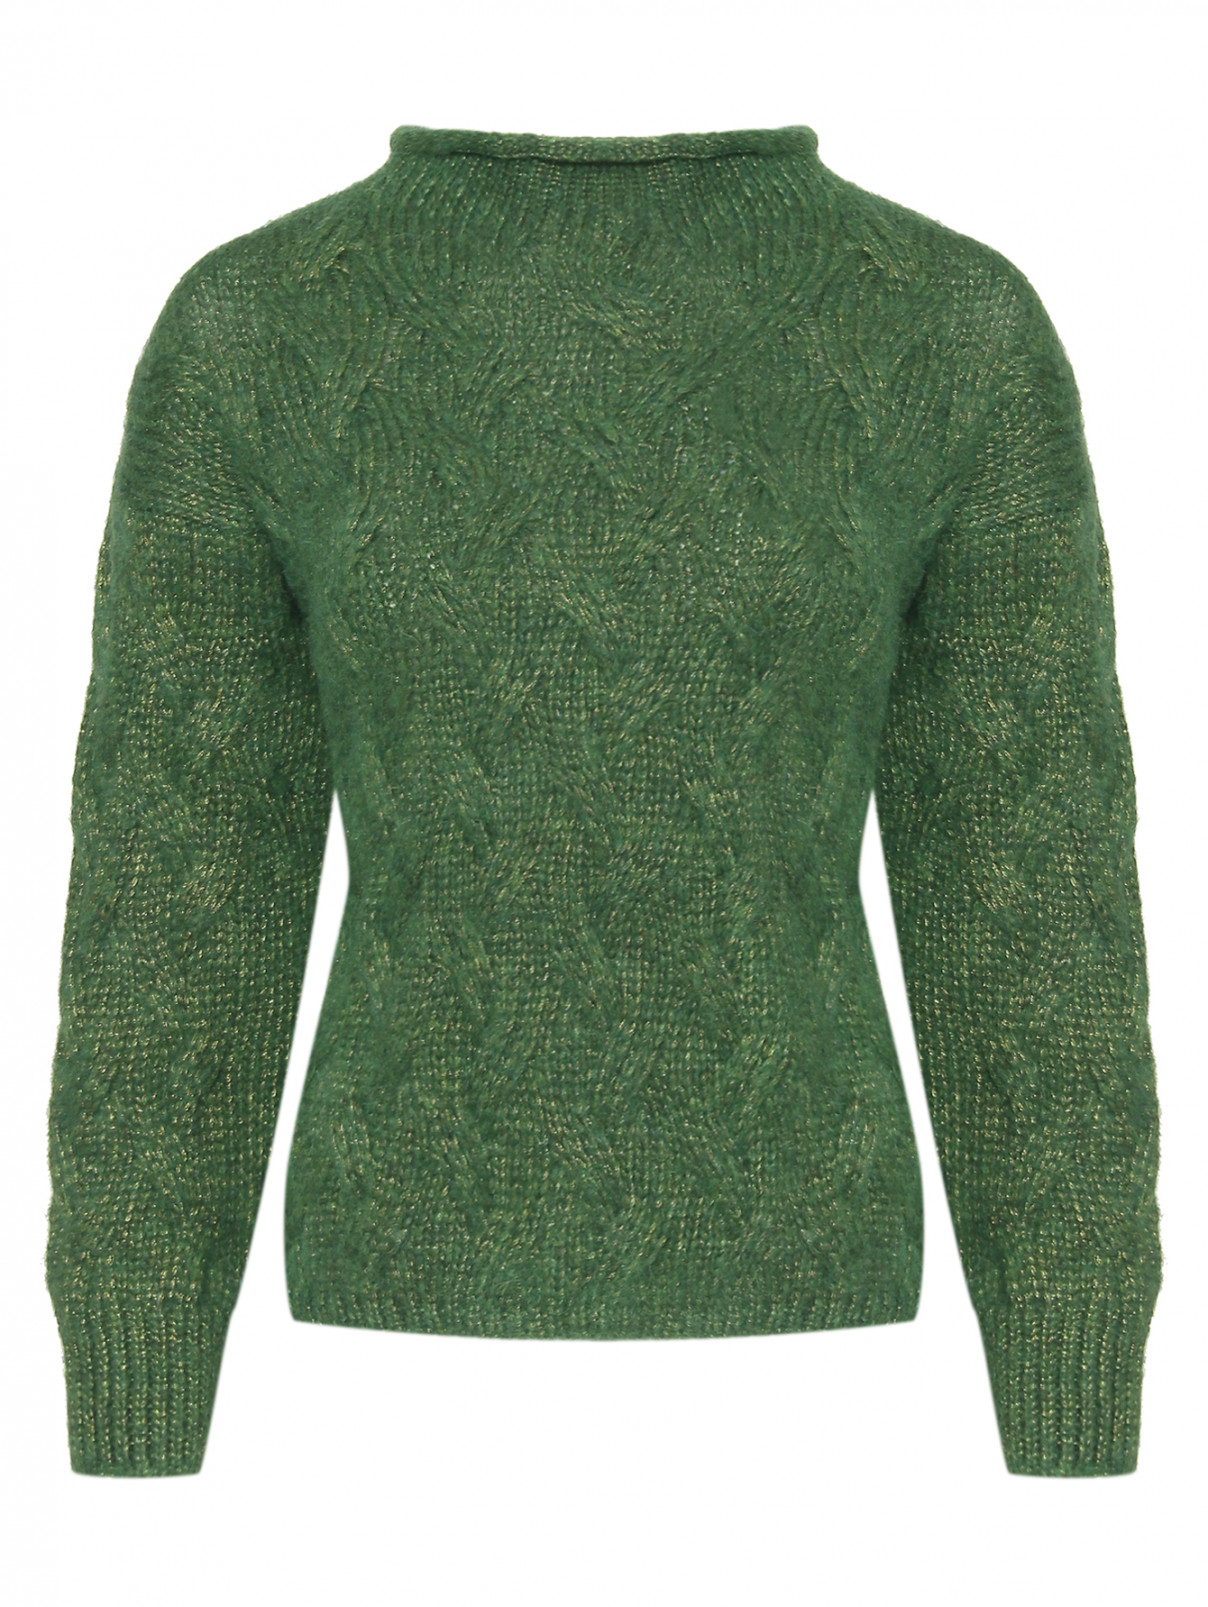 Джемпер из смешанной шерсти Luisa Spagnoli  –  Общий вид  – Цвет:  Зеленый